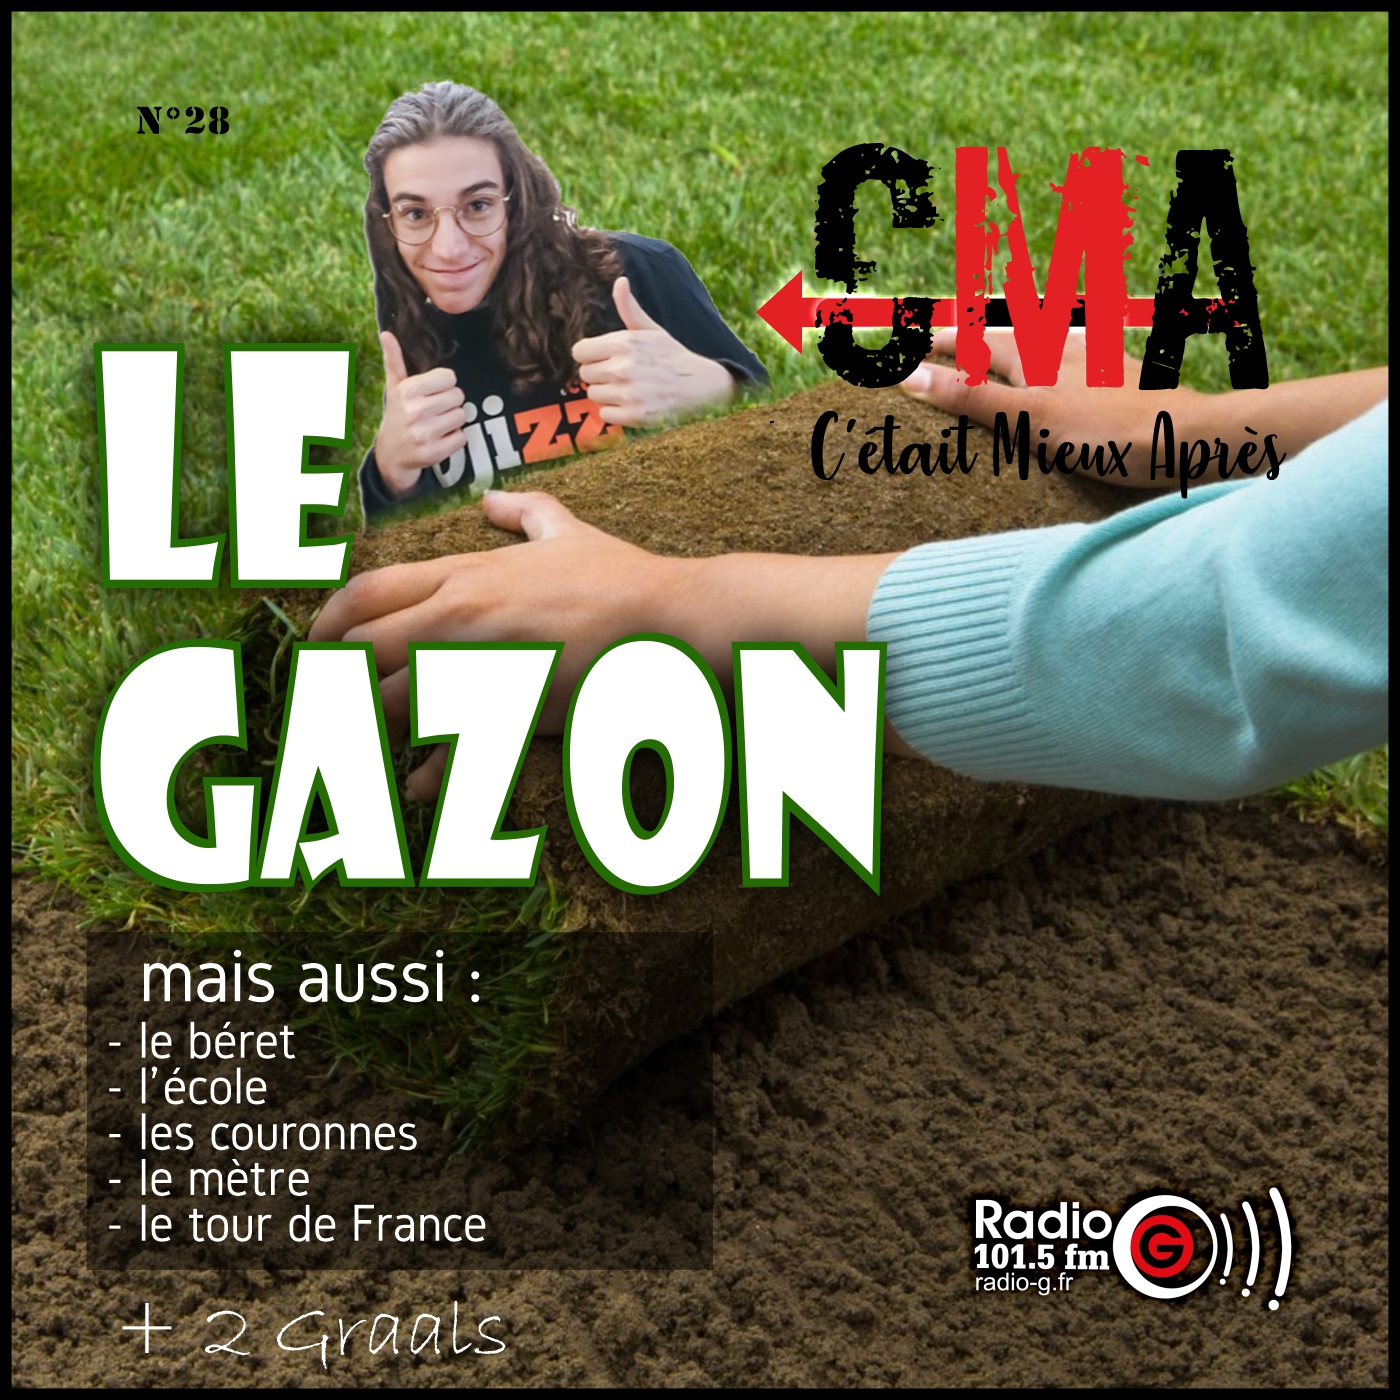 CMA du 18 octobre 2022 CMA, c'était mieux après, l'émission qui revient sur l'origine des choses - Radio G! Angers. CMA du 18 octobre 2022